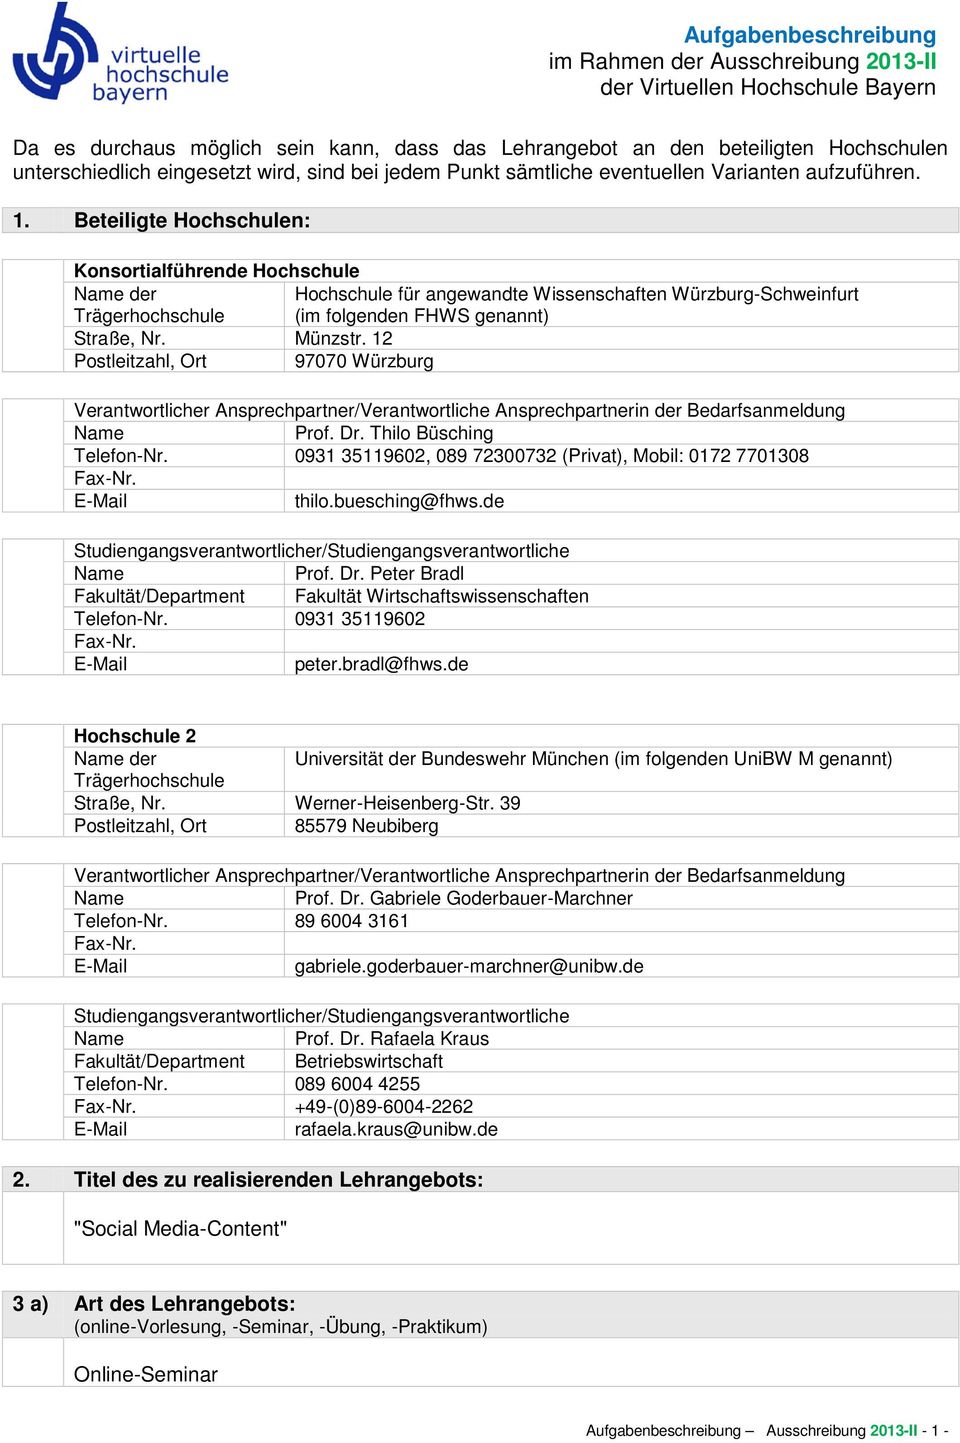 Beteiligte Hochschulen: Konsortialführende Hochschule der Hochschule für angewandte Wissenschaften Würzburg-Schweinfurt Trägerhochschule (im folgenden FHWS genannt) Straße, Nr. Münzstr.